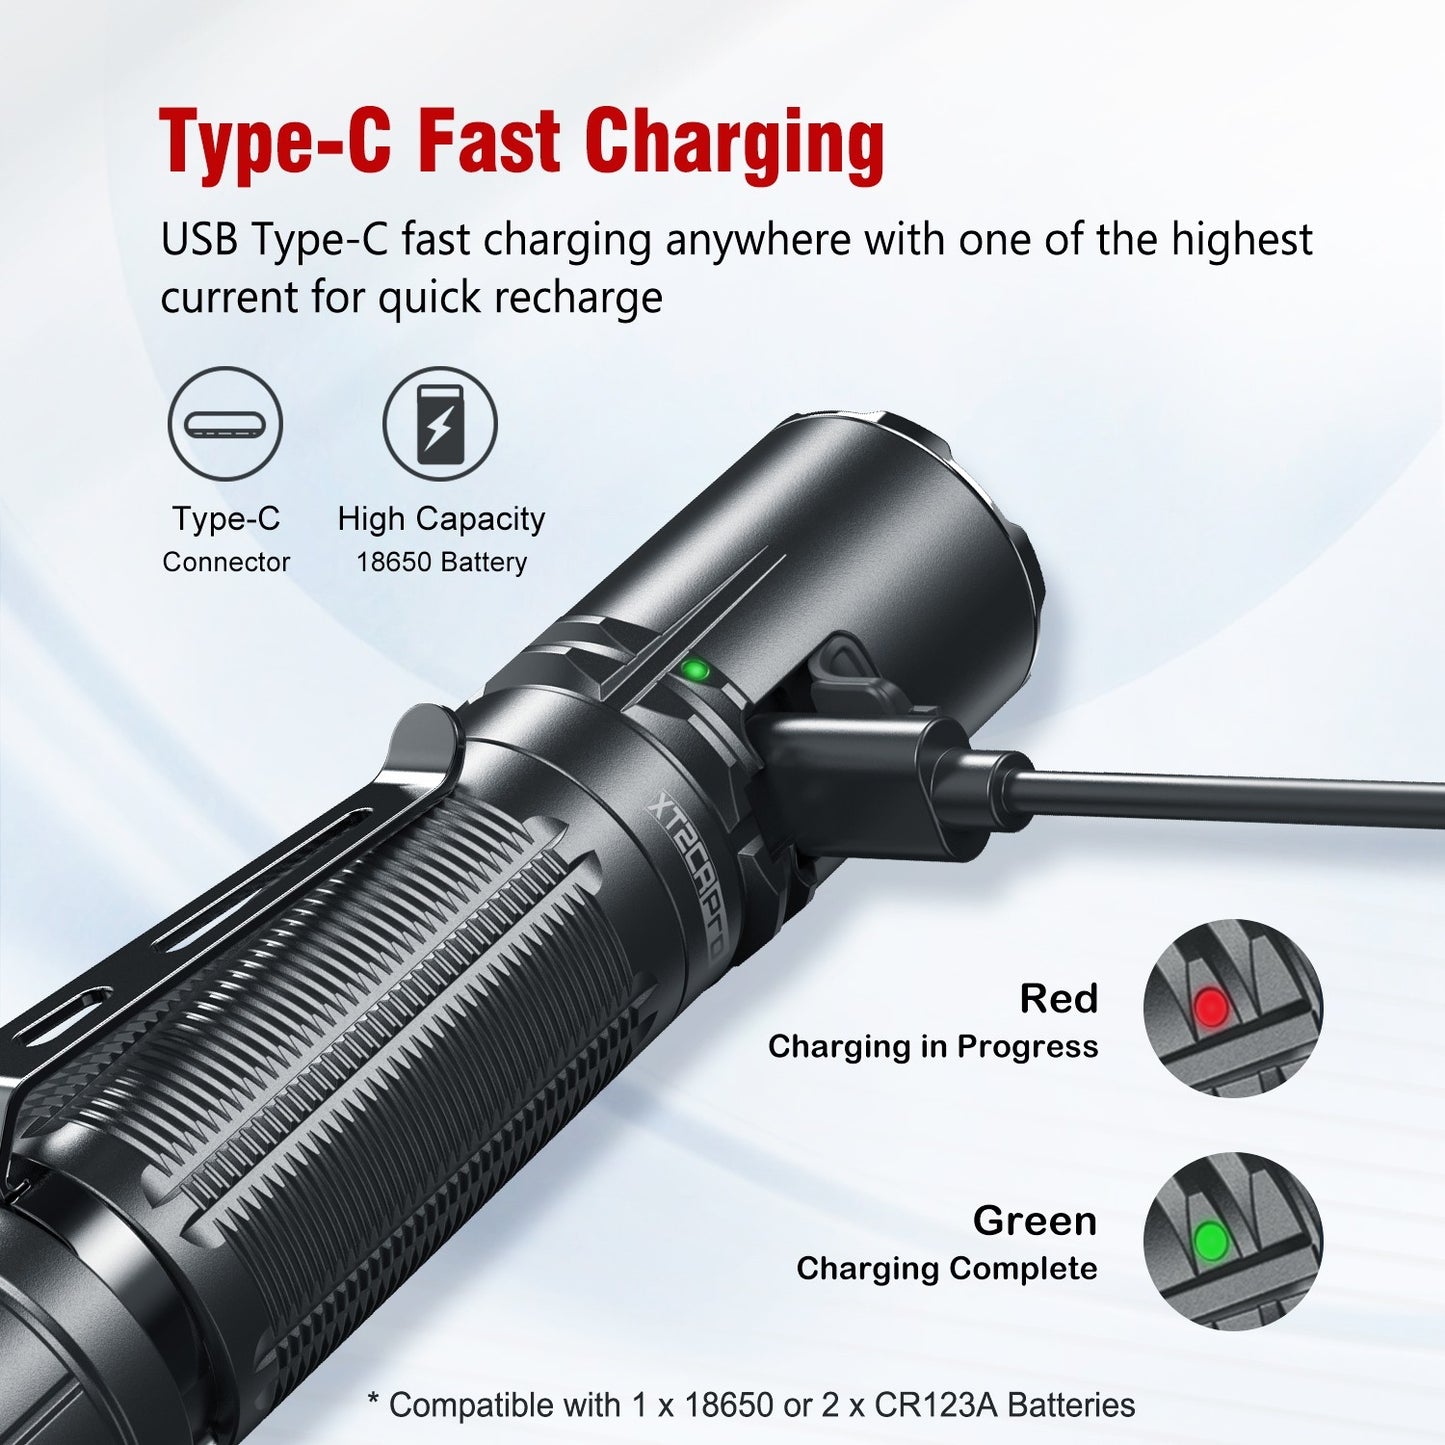 Klarus XT2CR Pro 2100 Lumen USB-C Rechargeable Tactical LED Torch